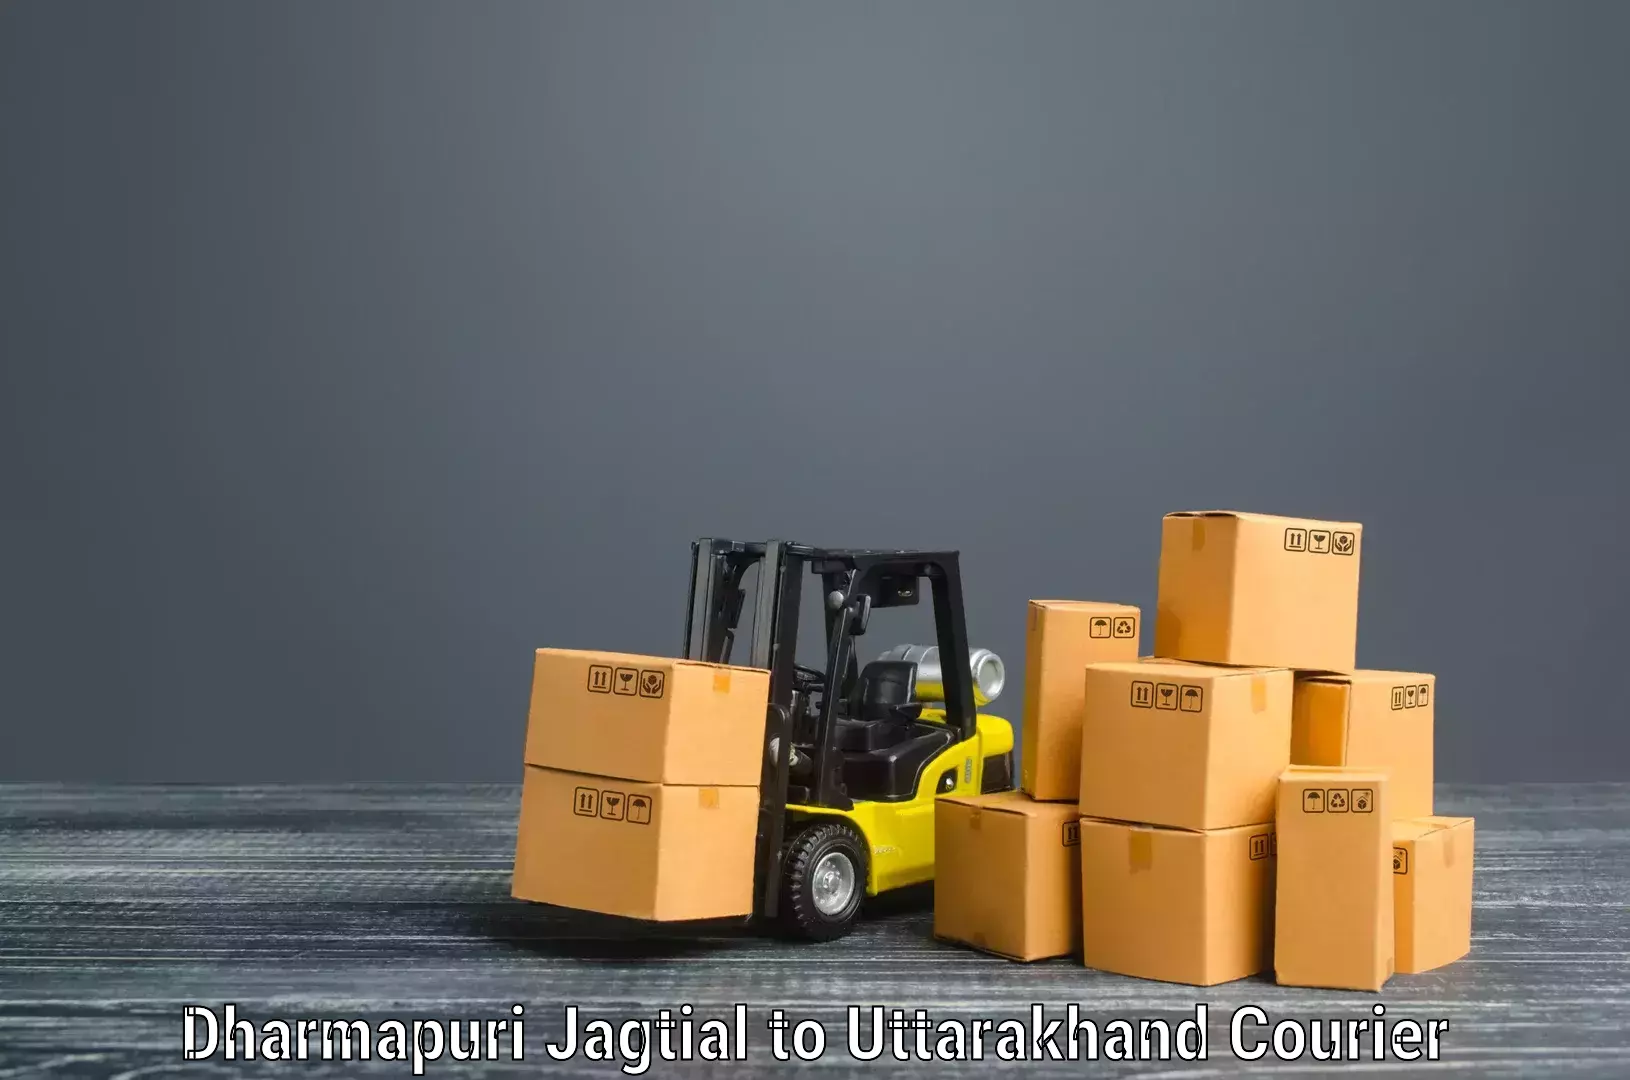 Furniture relocation experts in Dharmapuri Jagtial to Pauri